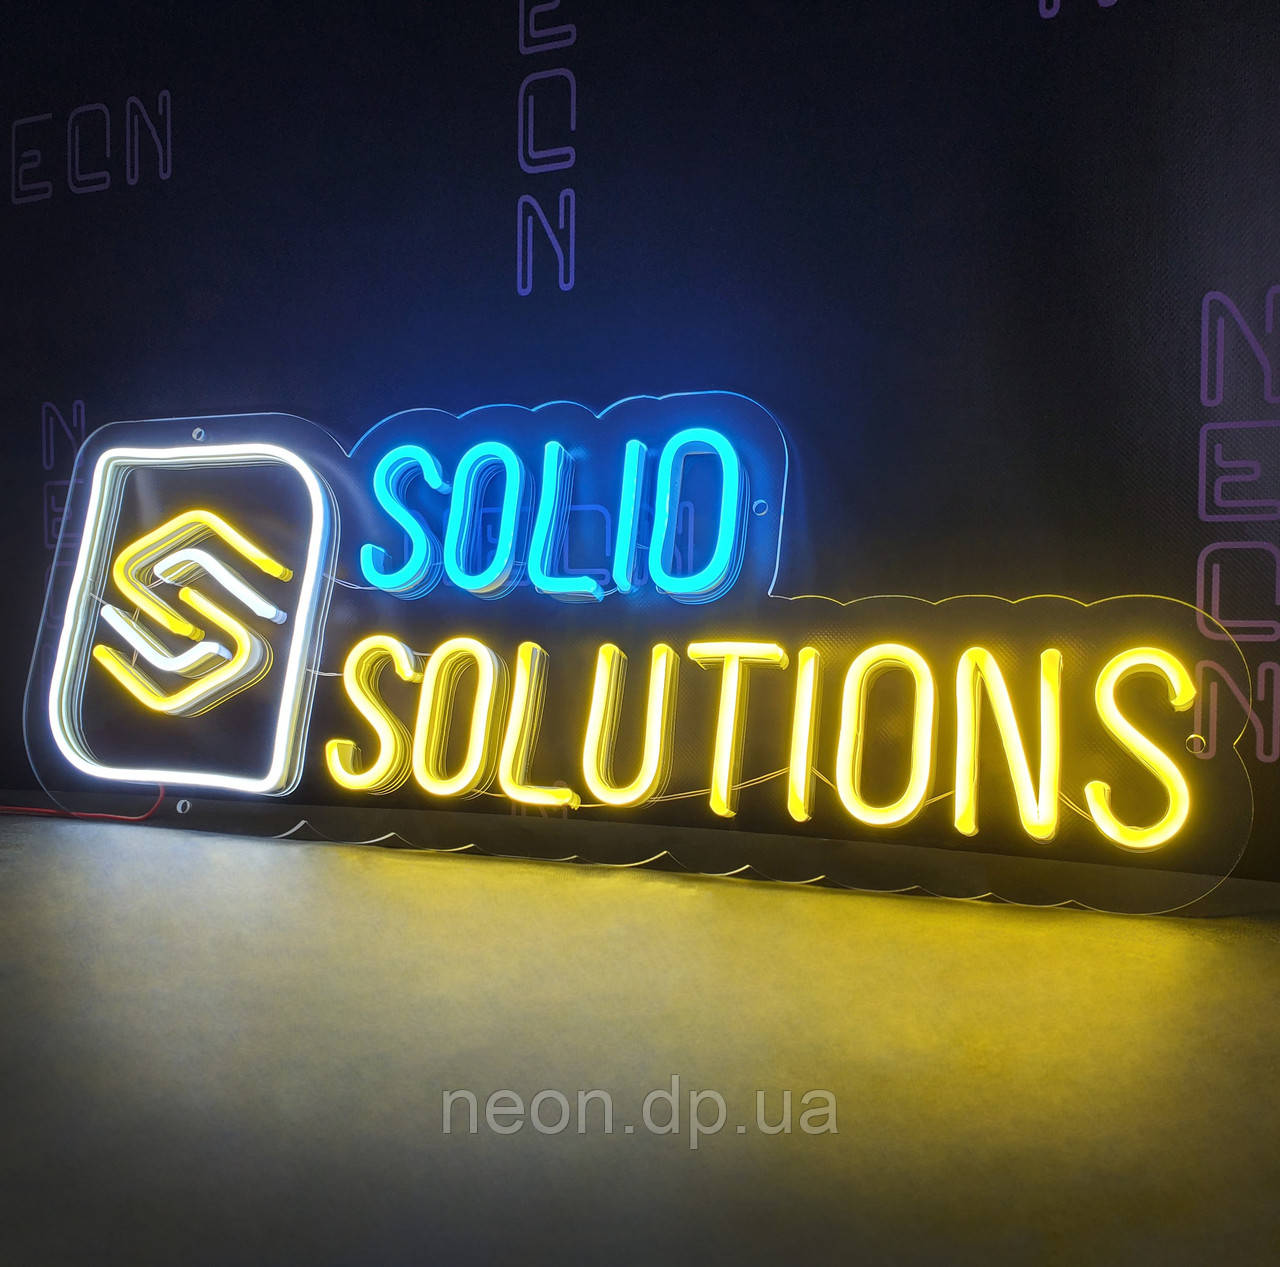 Неонова вивіска "Solid Solutions", фото 1